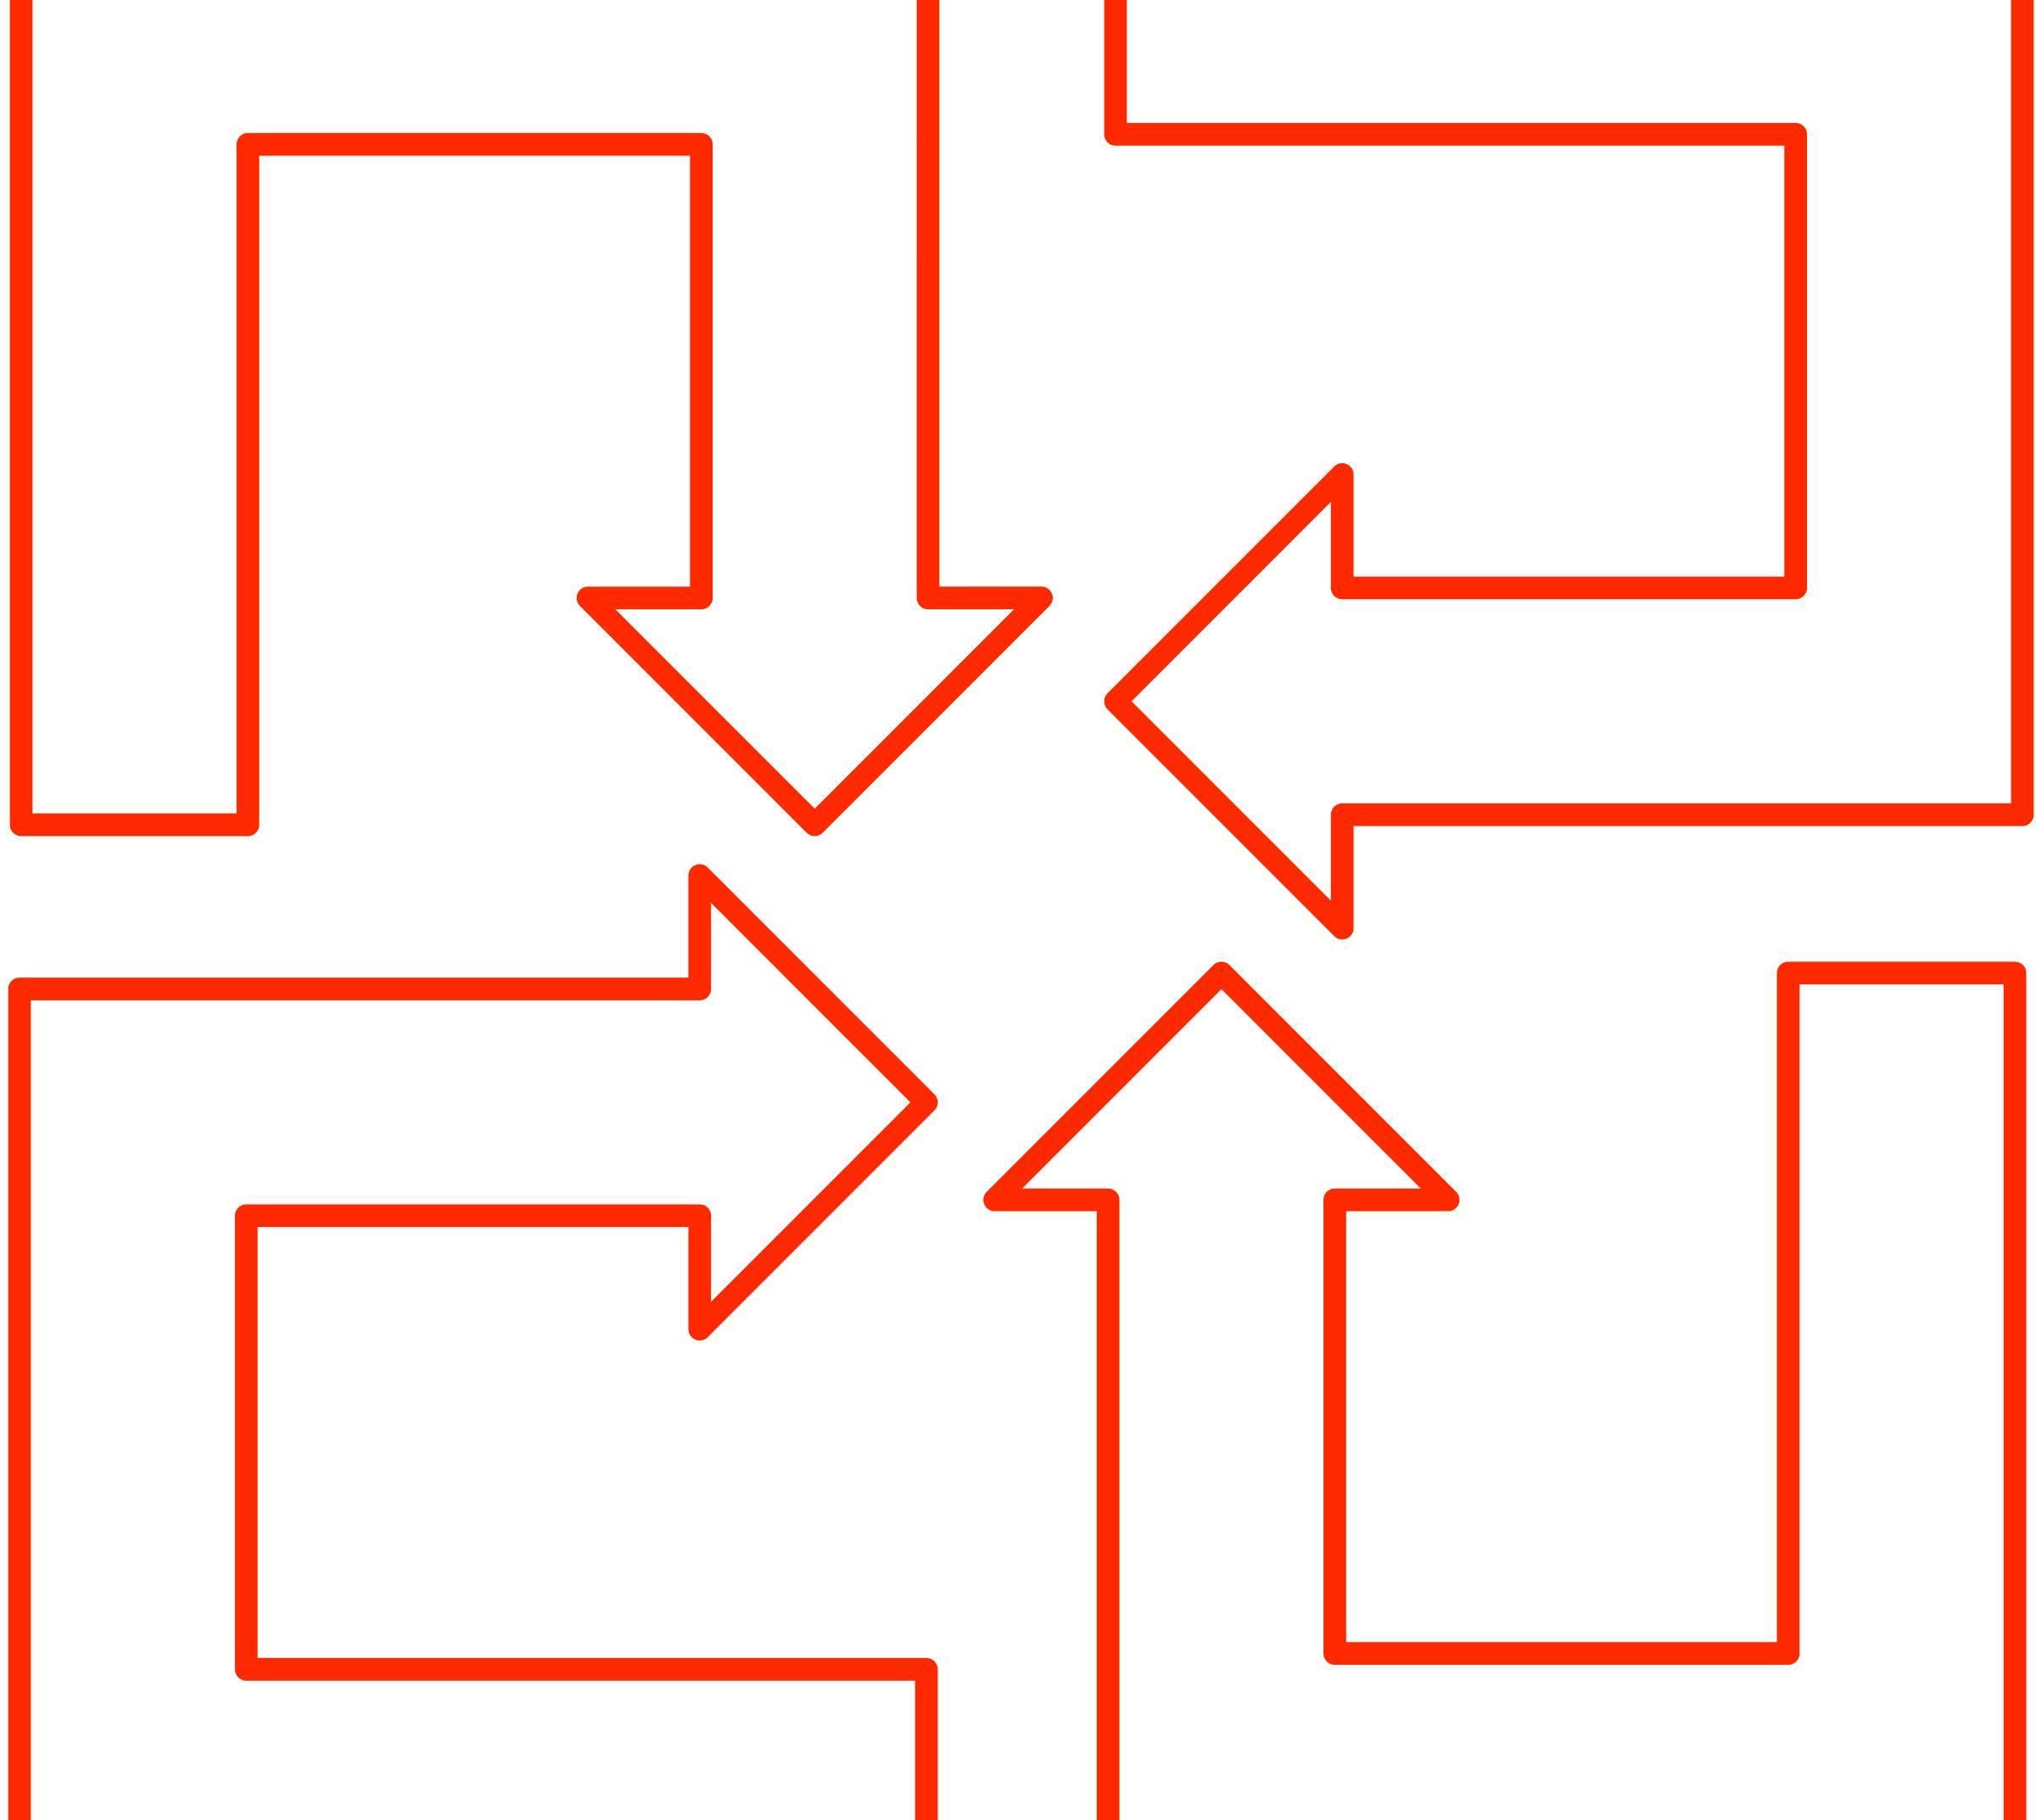 U-shaped Arrow Logo - U-shaped arrow set 01 Icons PNG - Free PNG and Icons Downloads